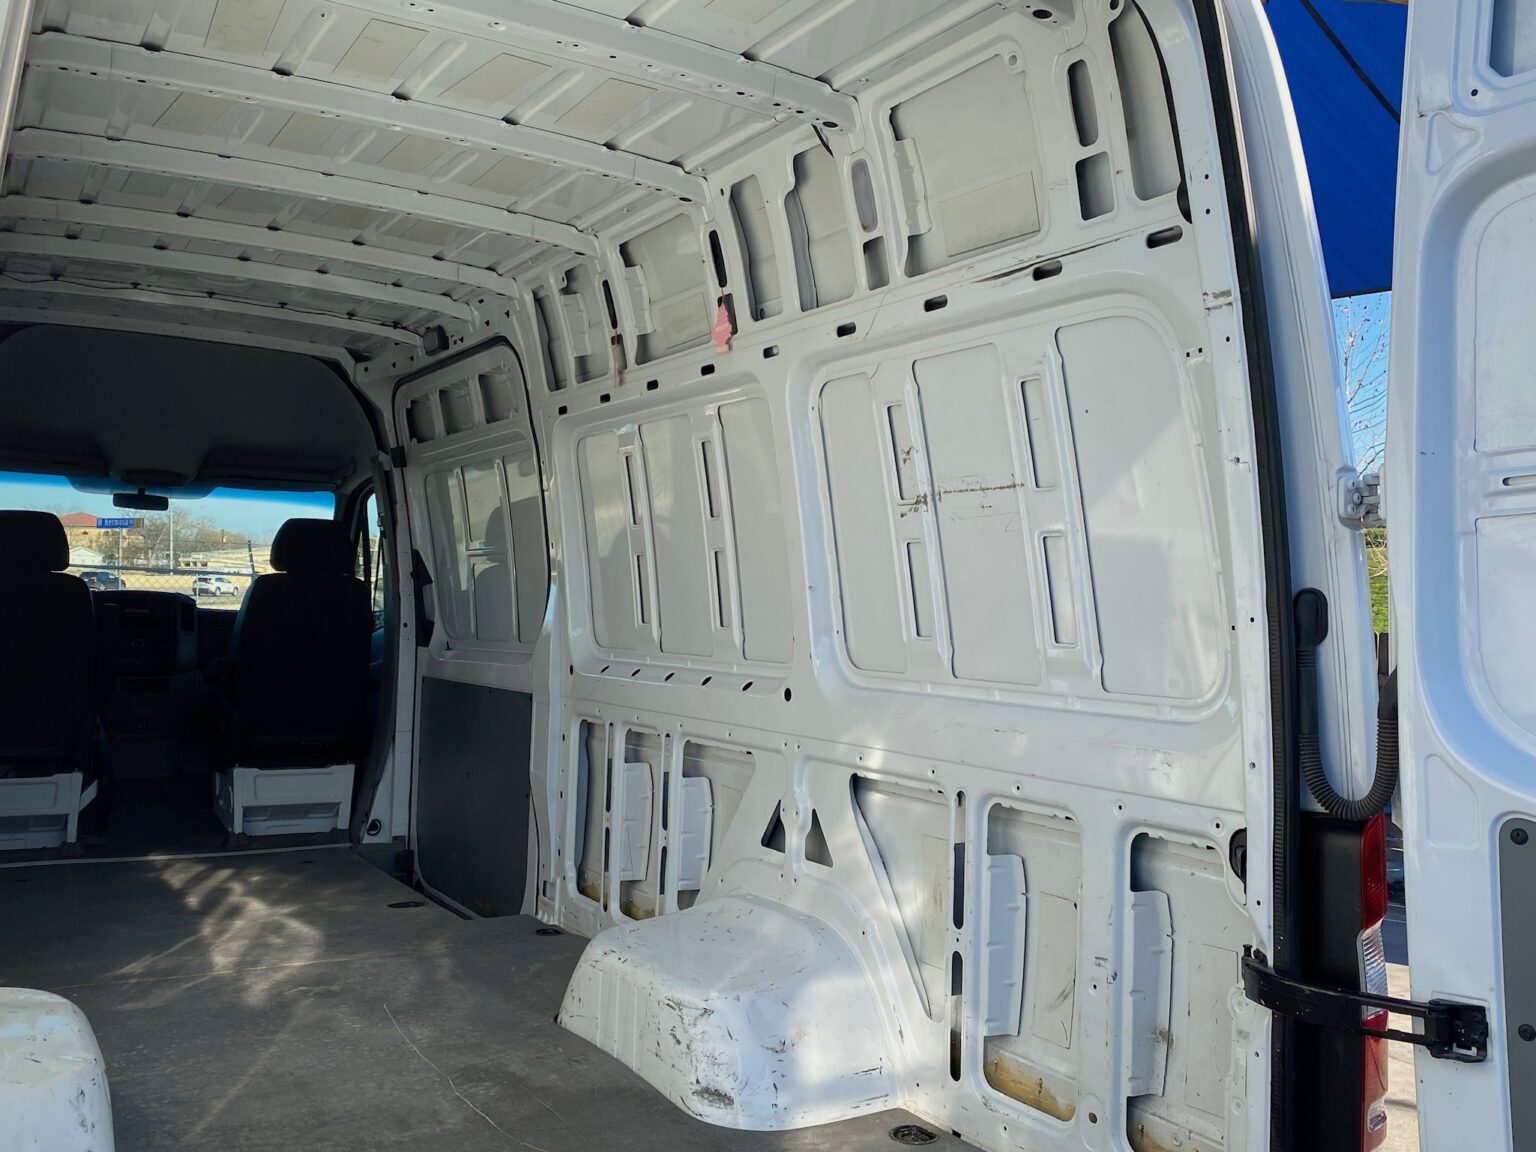 2012 Mercedes Sprinter 3500 Dually Cargo Van